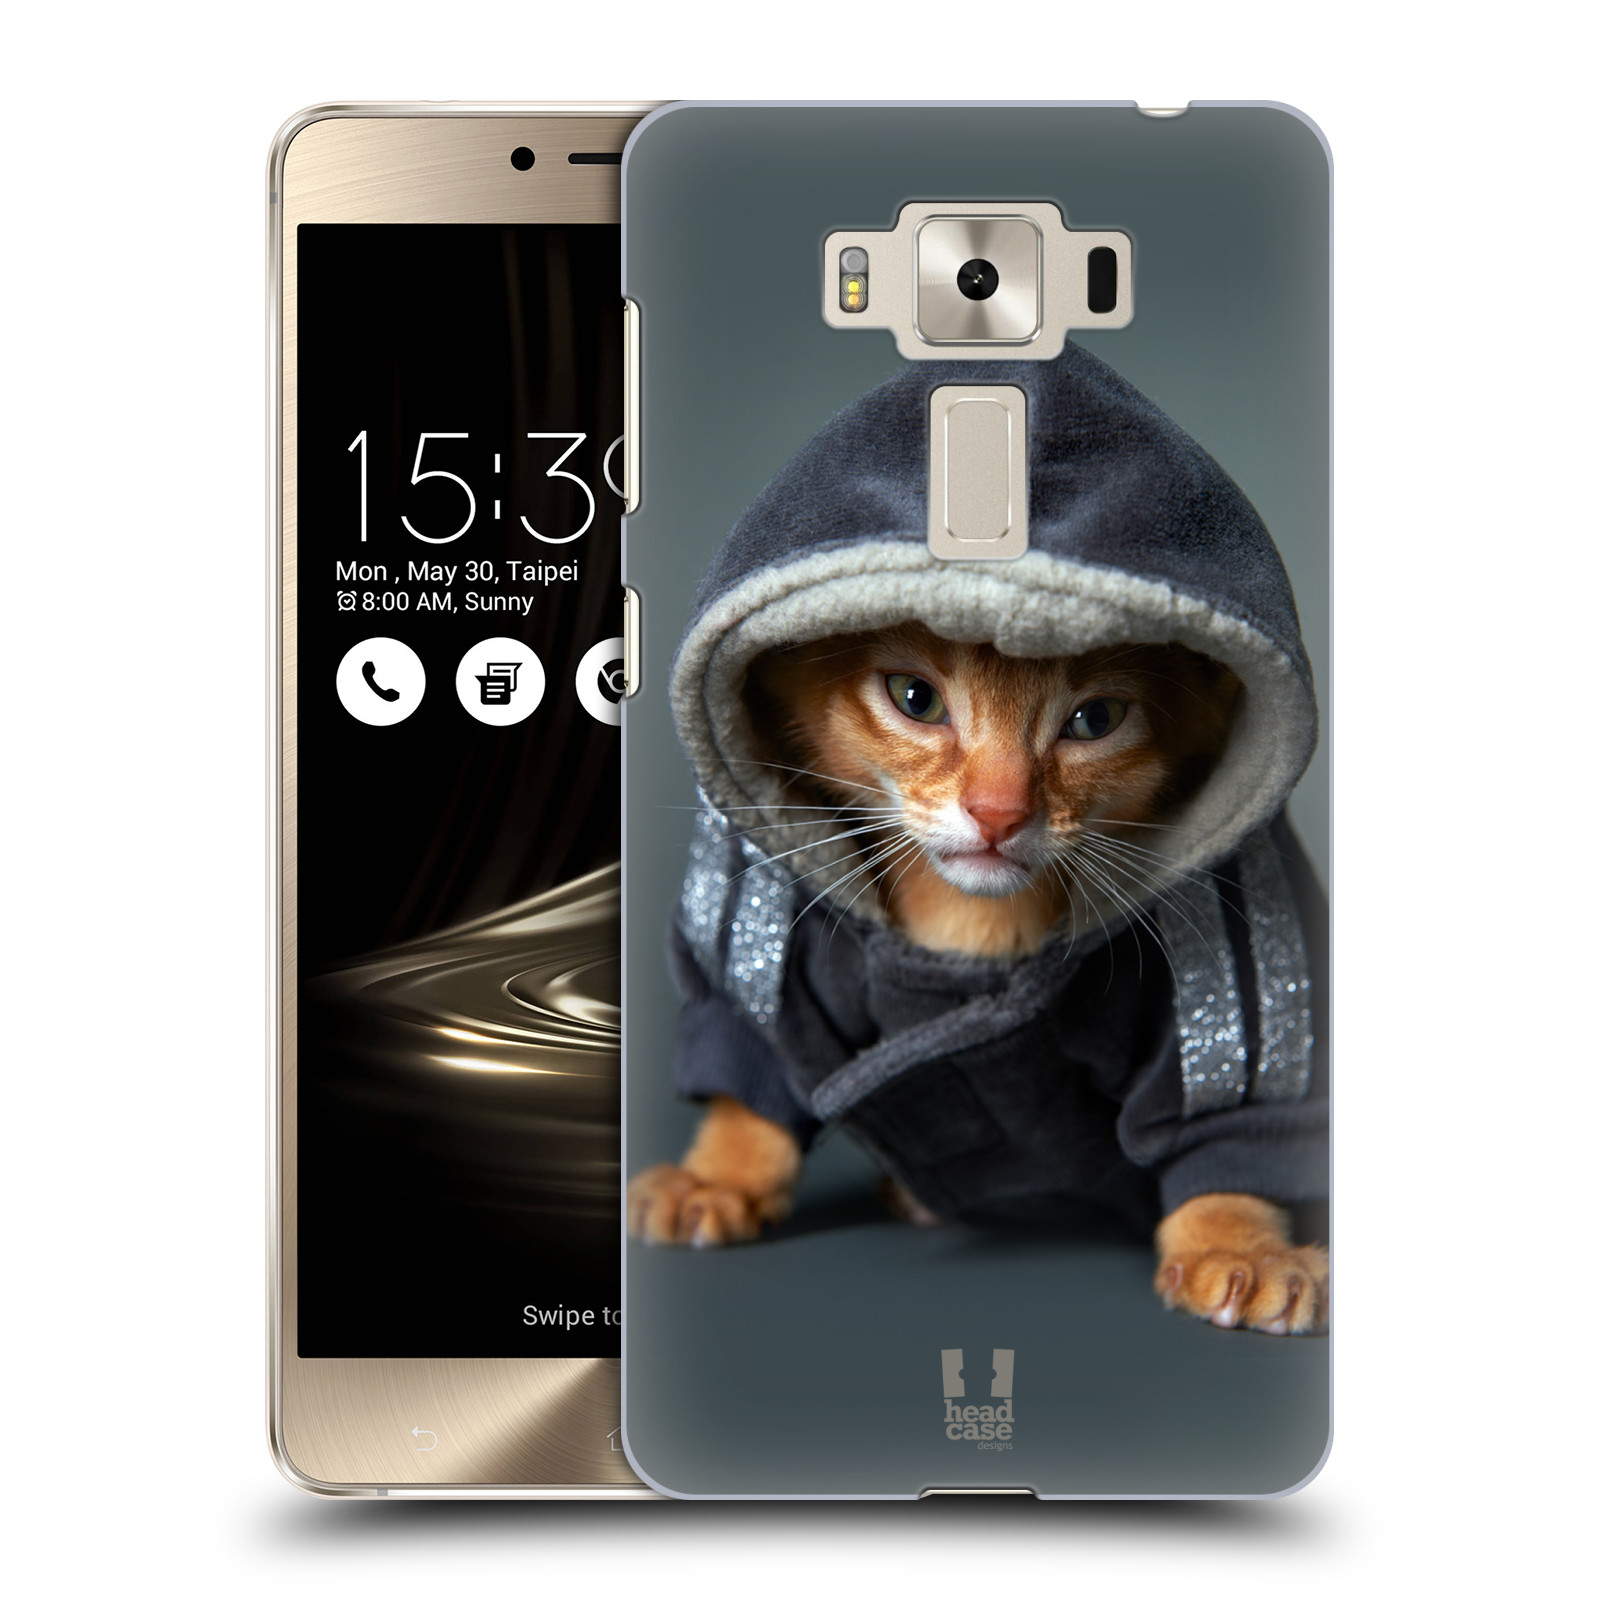 HEAD CASE plastový obal na mobil Asus Zenfone 3 DELUXE ZS550KL vzor Legrační zvířátka kotě/kočička s kapucí